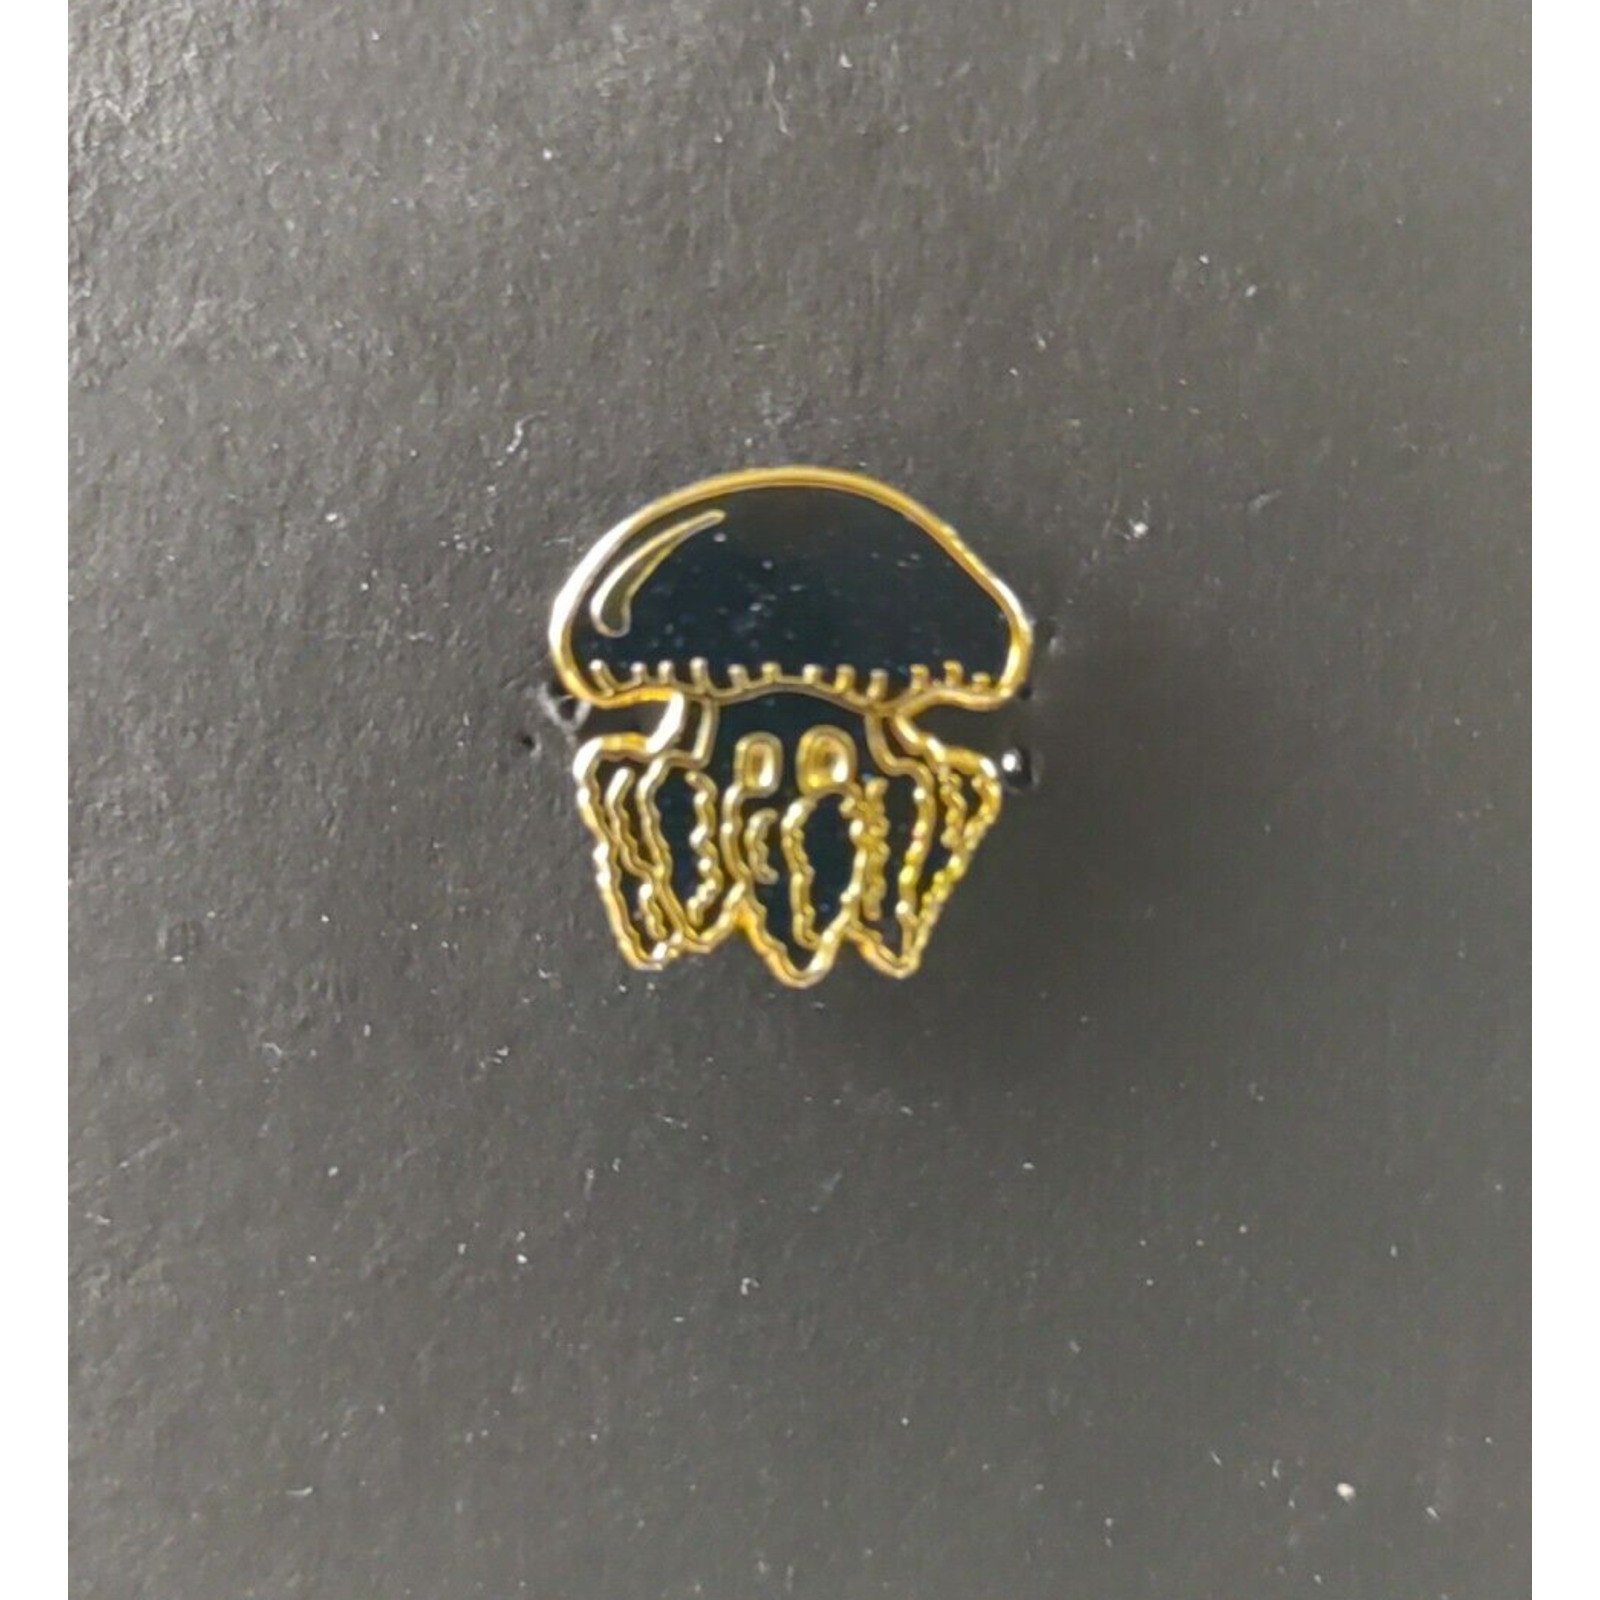 Jelly Fish Black Gold Color Metal Enamel Hat Lapel Pinback Pin Enamel Ocean